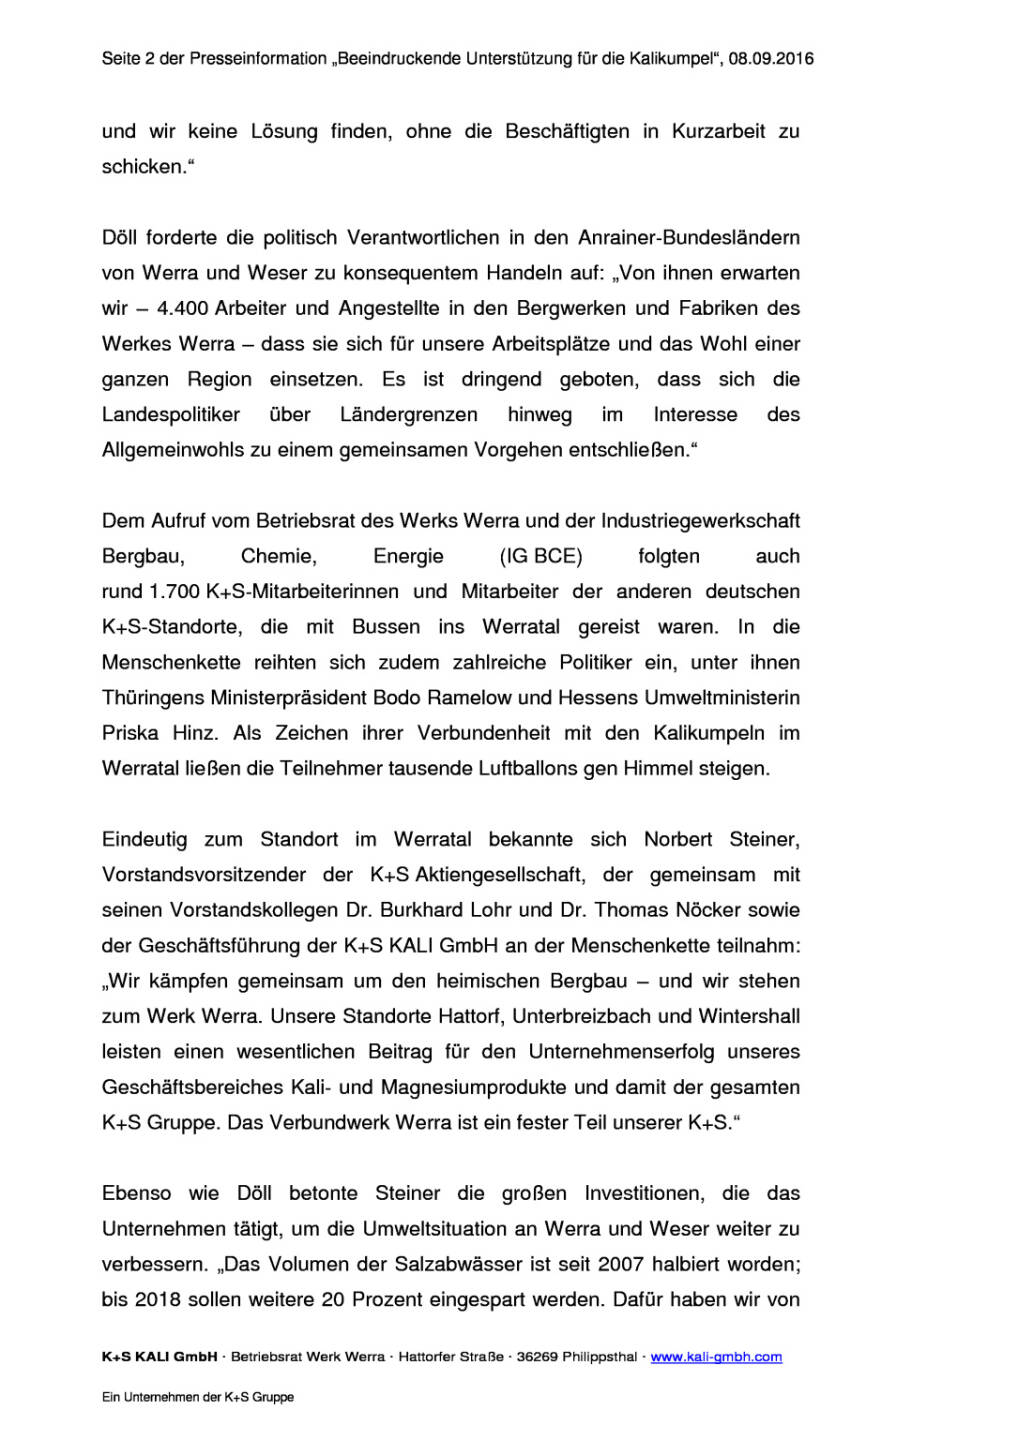 K+S AG Betriebsrat: Menschenkette im Werratal, Seite 2/4, komplettes Dokument unter http://boerse-social.com/static/uploads/file_1751_ks_ag_betriebsrat_menschenkette_im_werratal.pdf